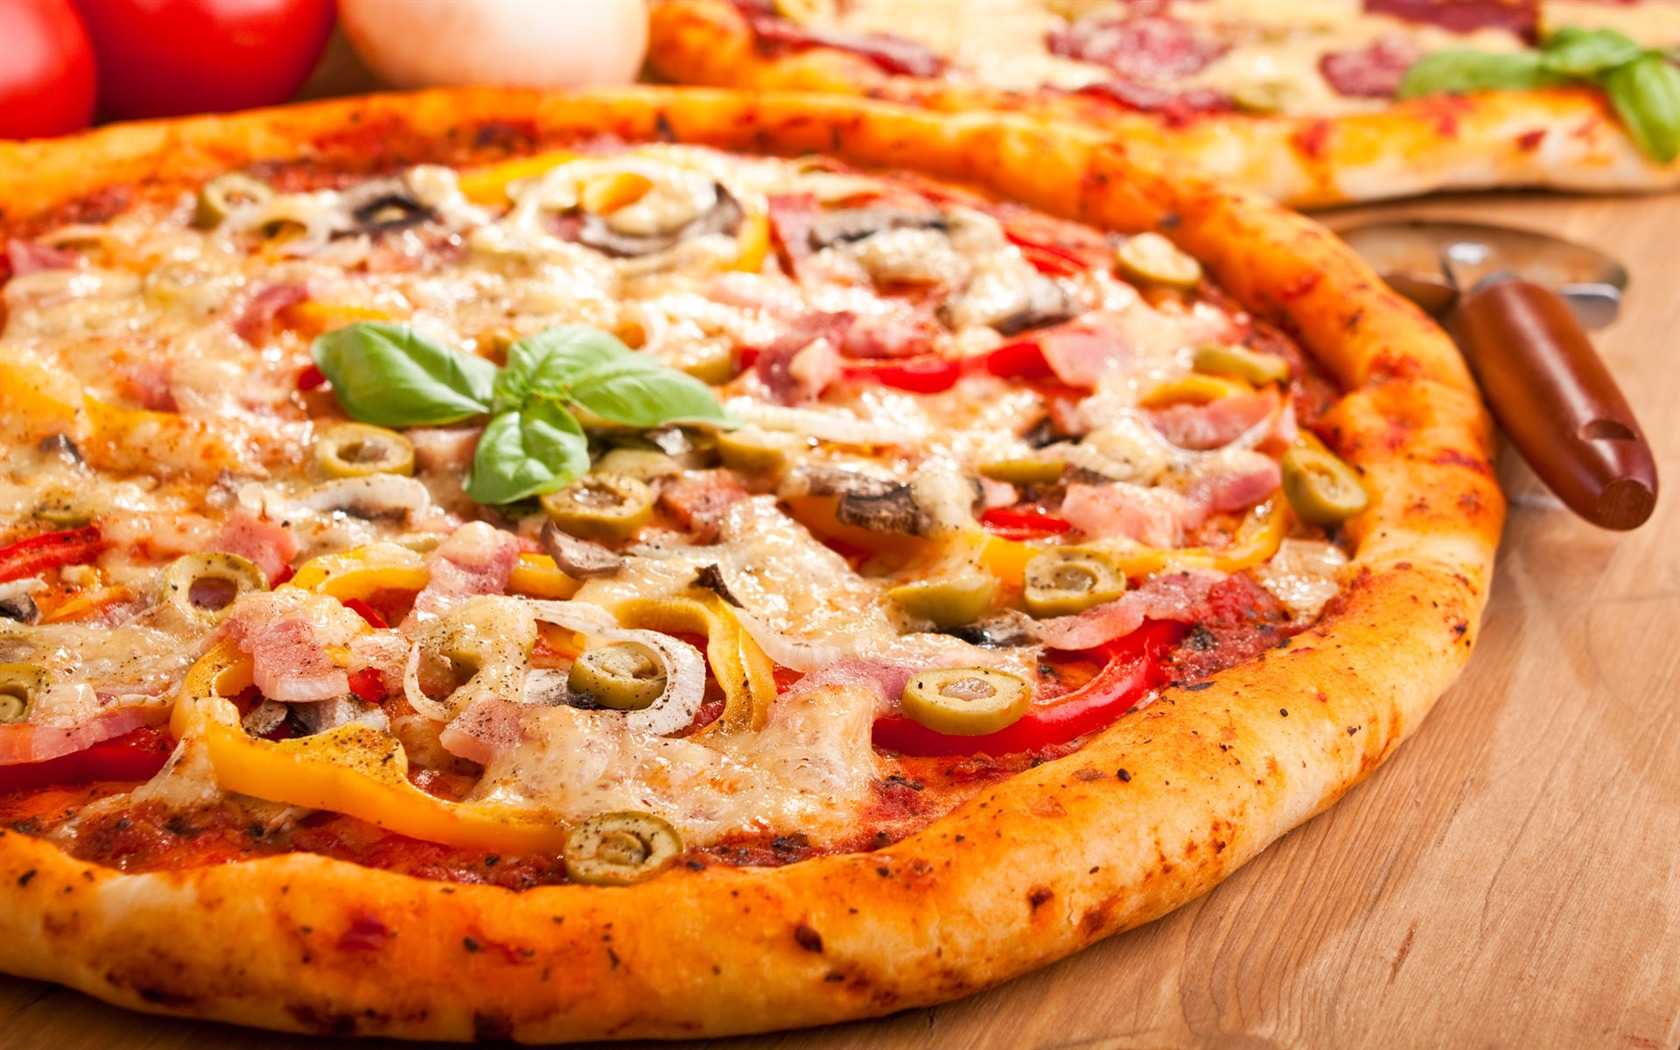 Fondos de pizzerías de Alimentos (4) #20 - 1680x1050